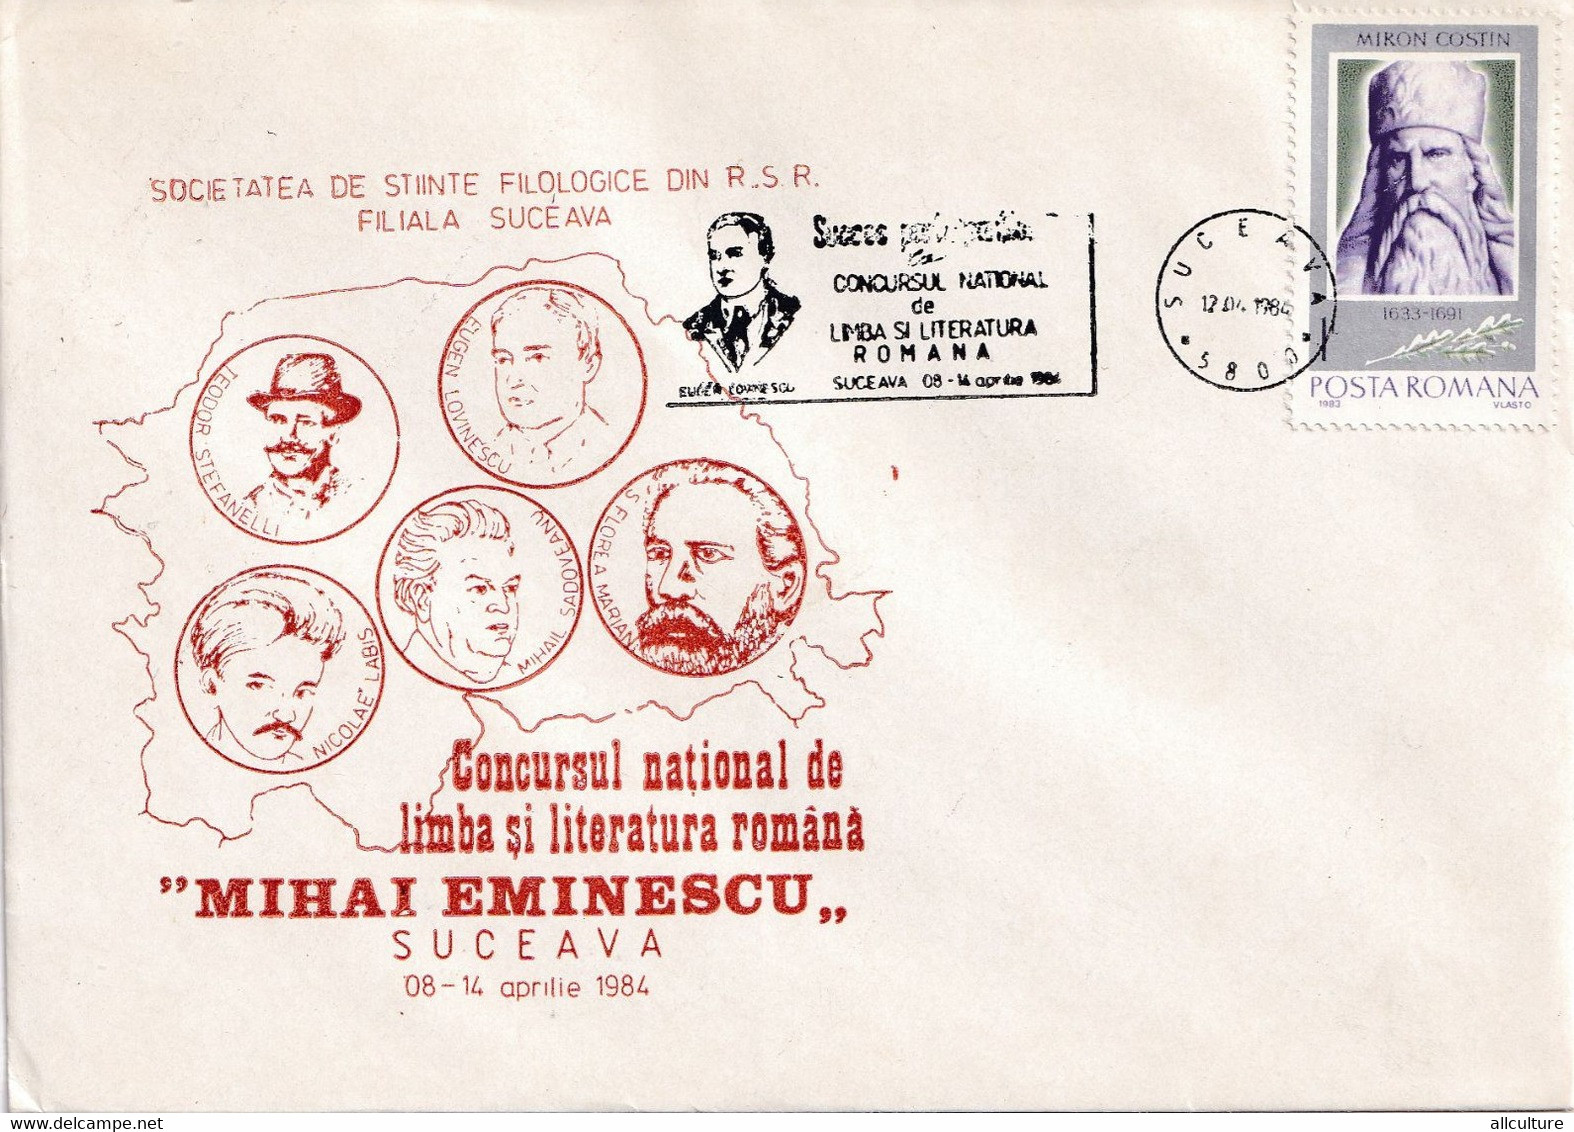 A2824 - Societatea De Stiinte Filologice, Concursul National De Literatura Romana Mihai Eminescu, Suceava 1984  Romania - Cartas & Documentos